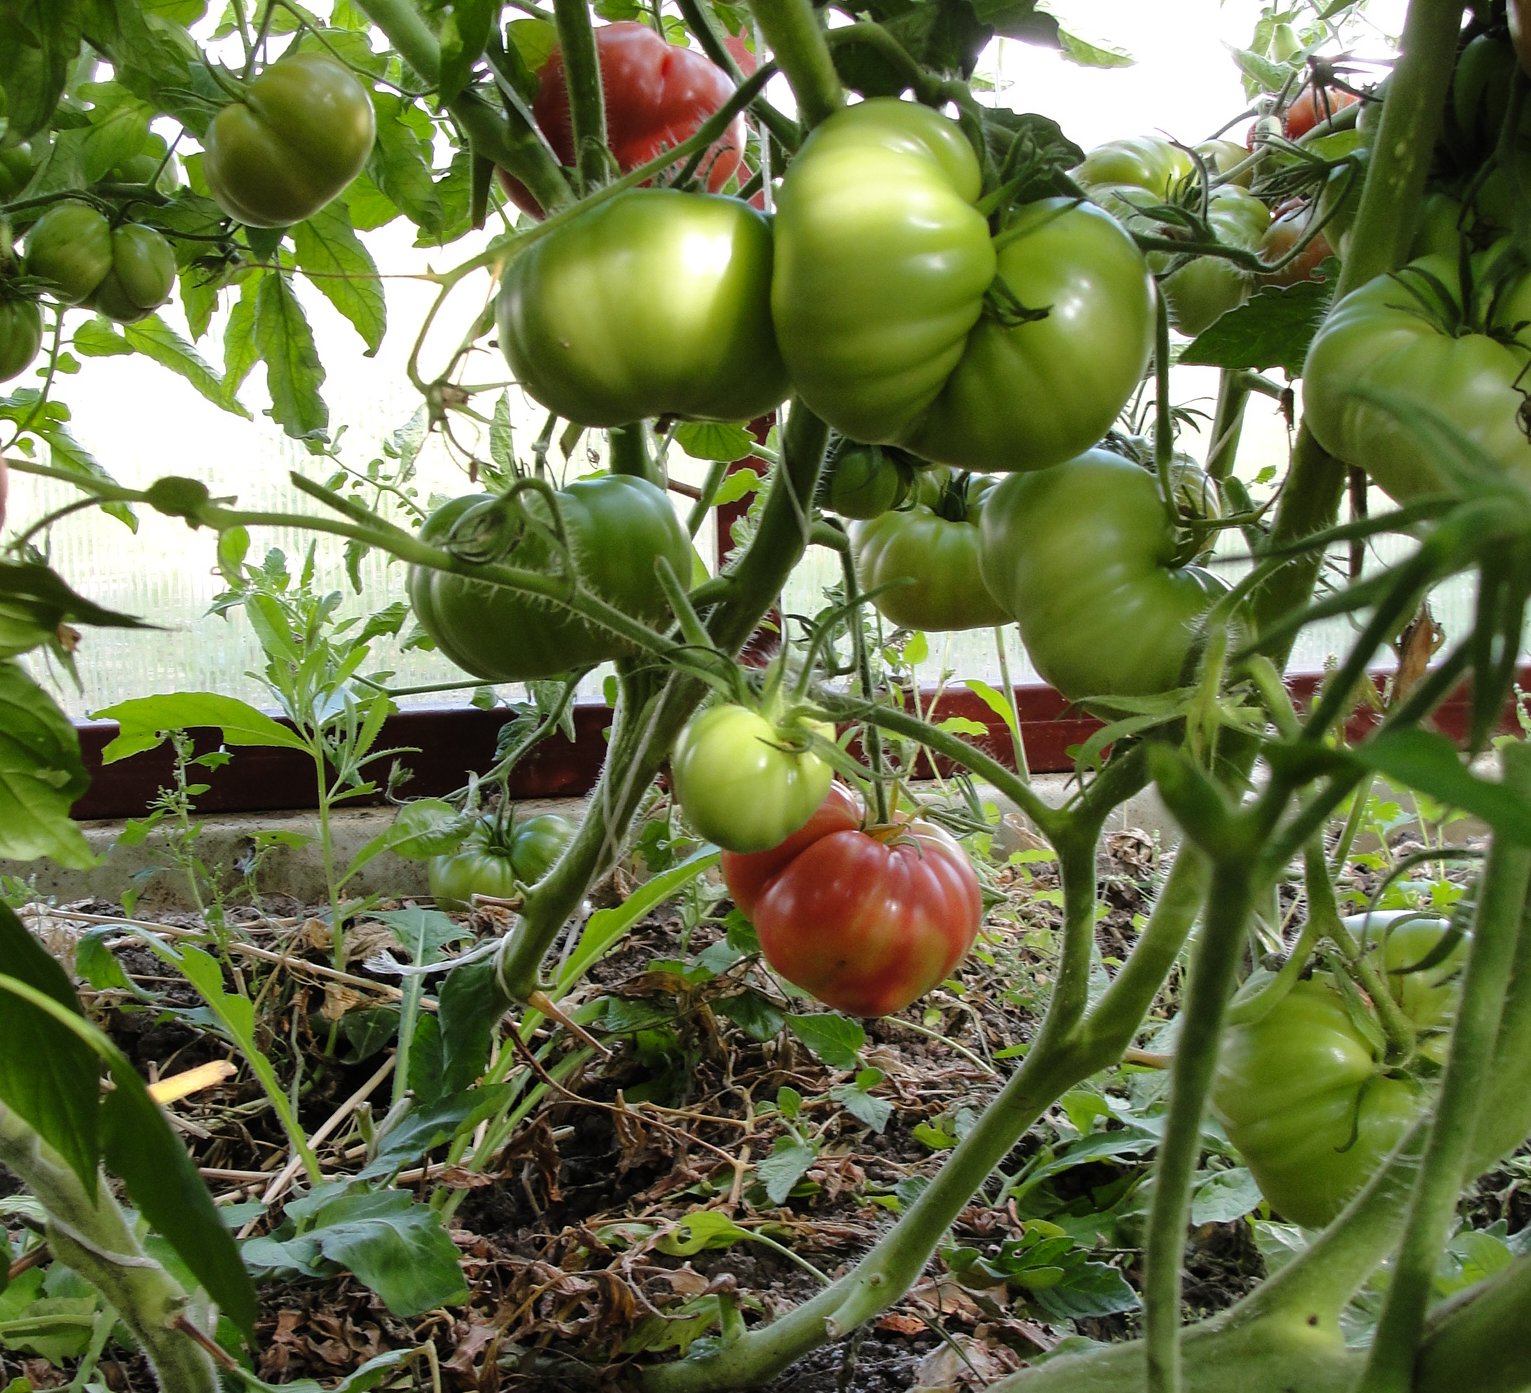 О томате хлыновский: описание сорта, характеристики помидоров, посев